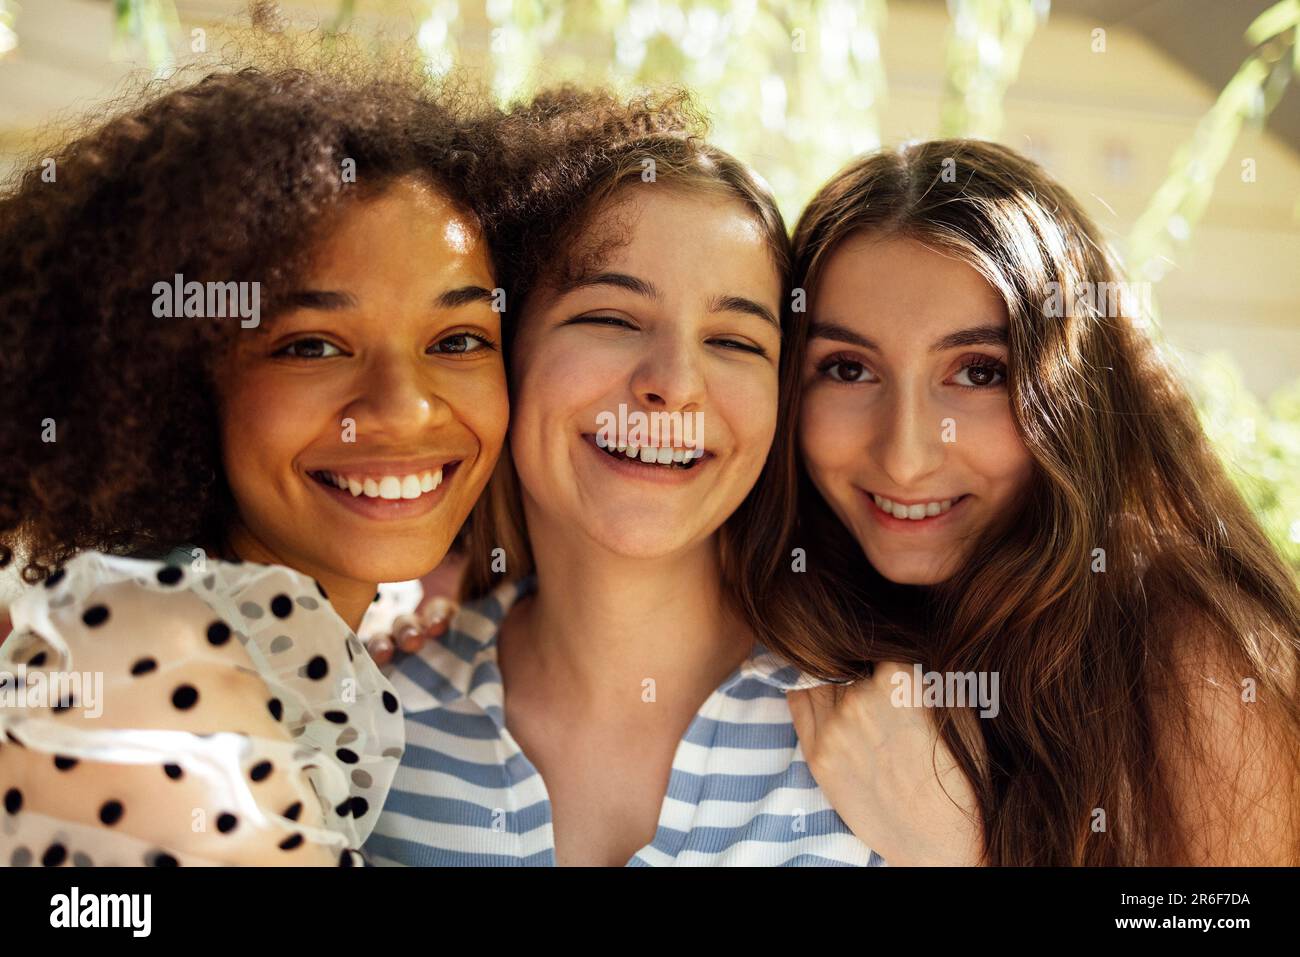 Gros plan portrait de trois jolies adolescentes de différentes nationalités dans des vêtements décontractés posent à l'appareil photo et embrasse. Souriant drôles filles h Banque D'Images